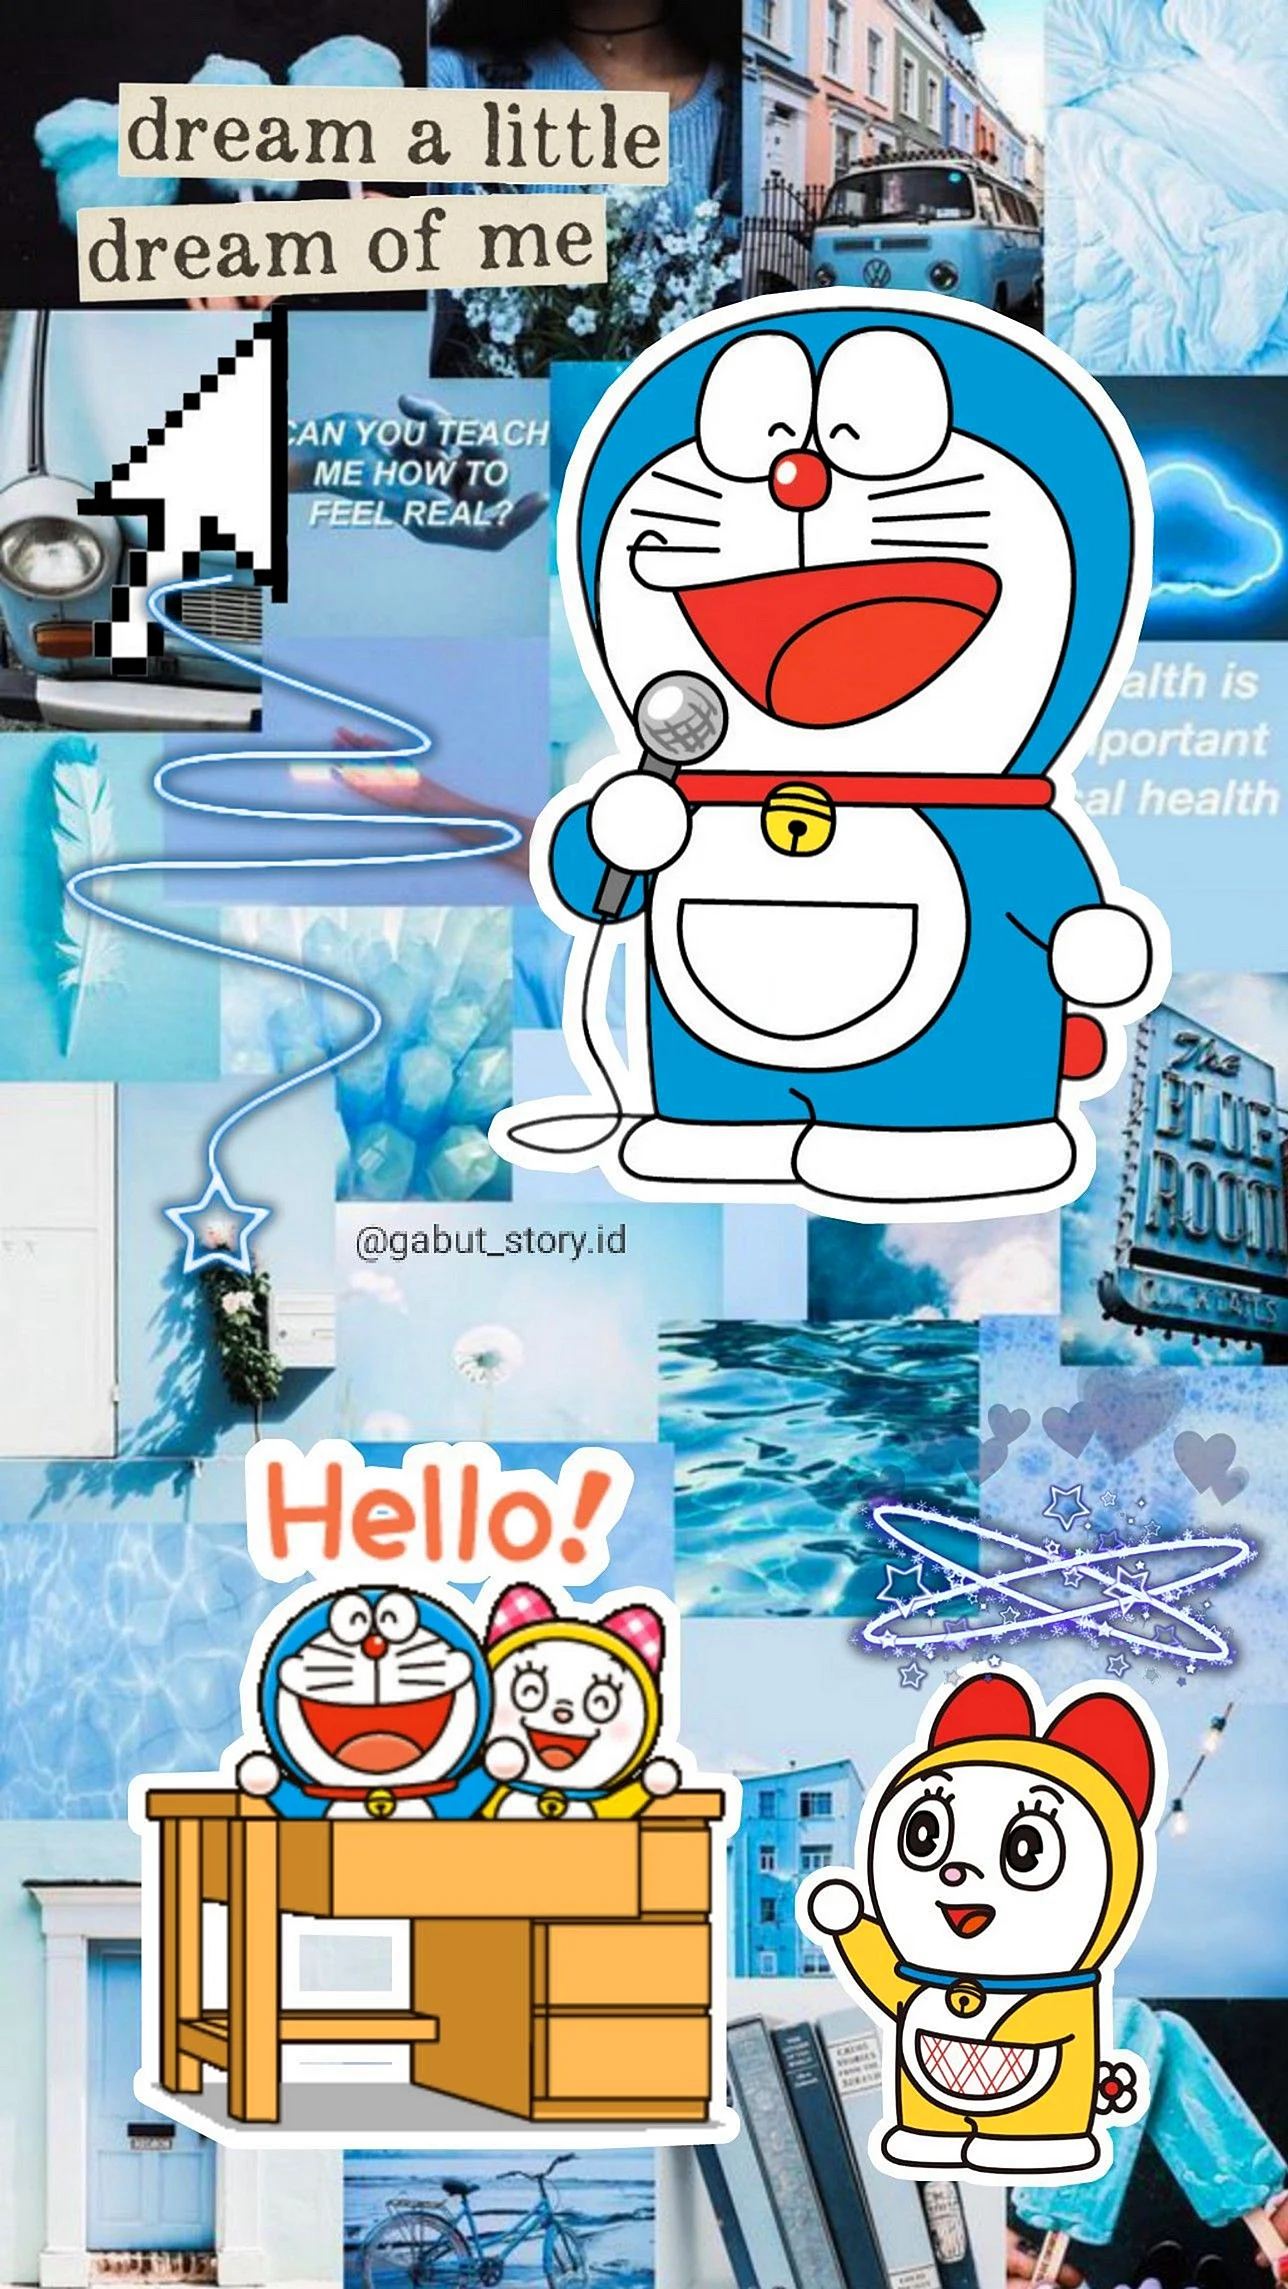 Doraemon Aesthetic Wallpaper